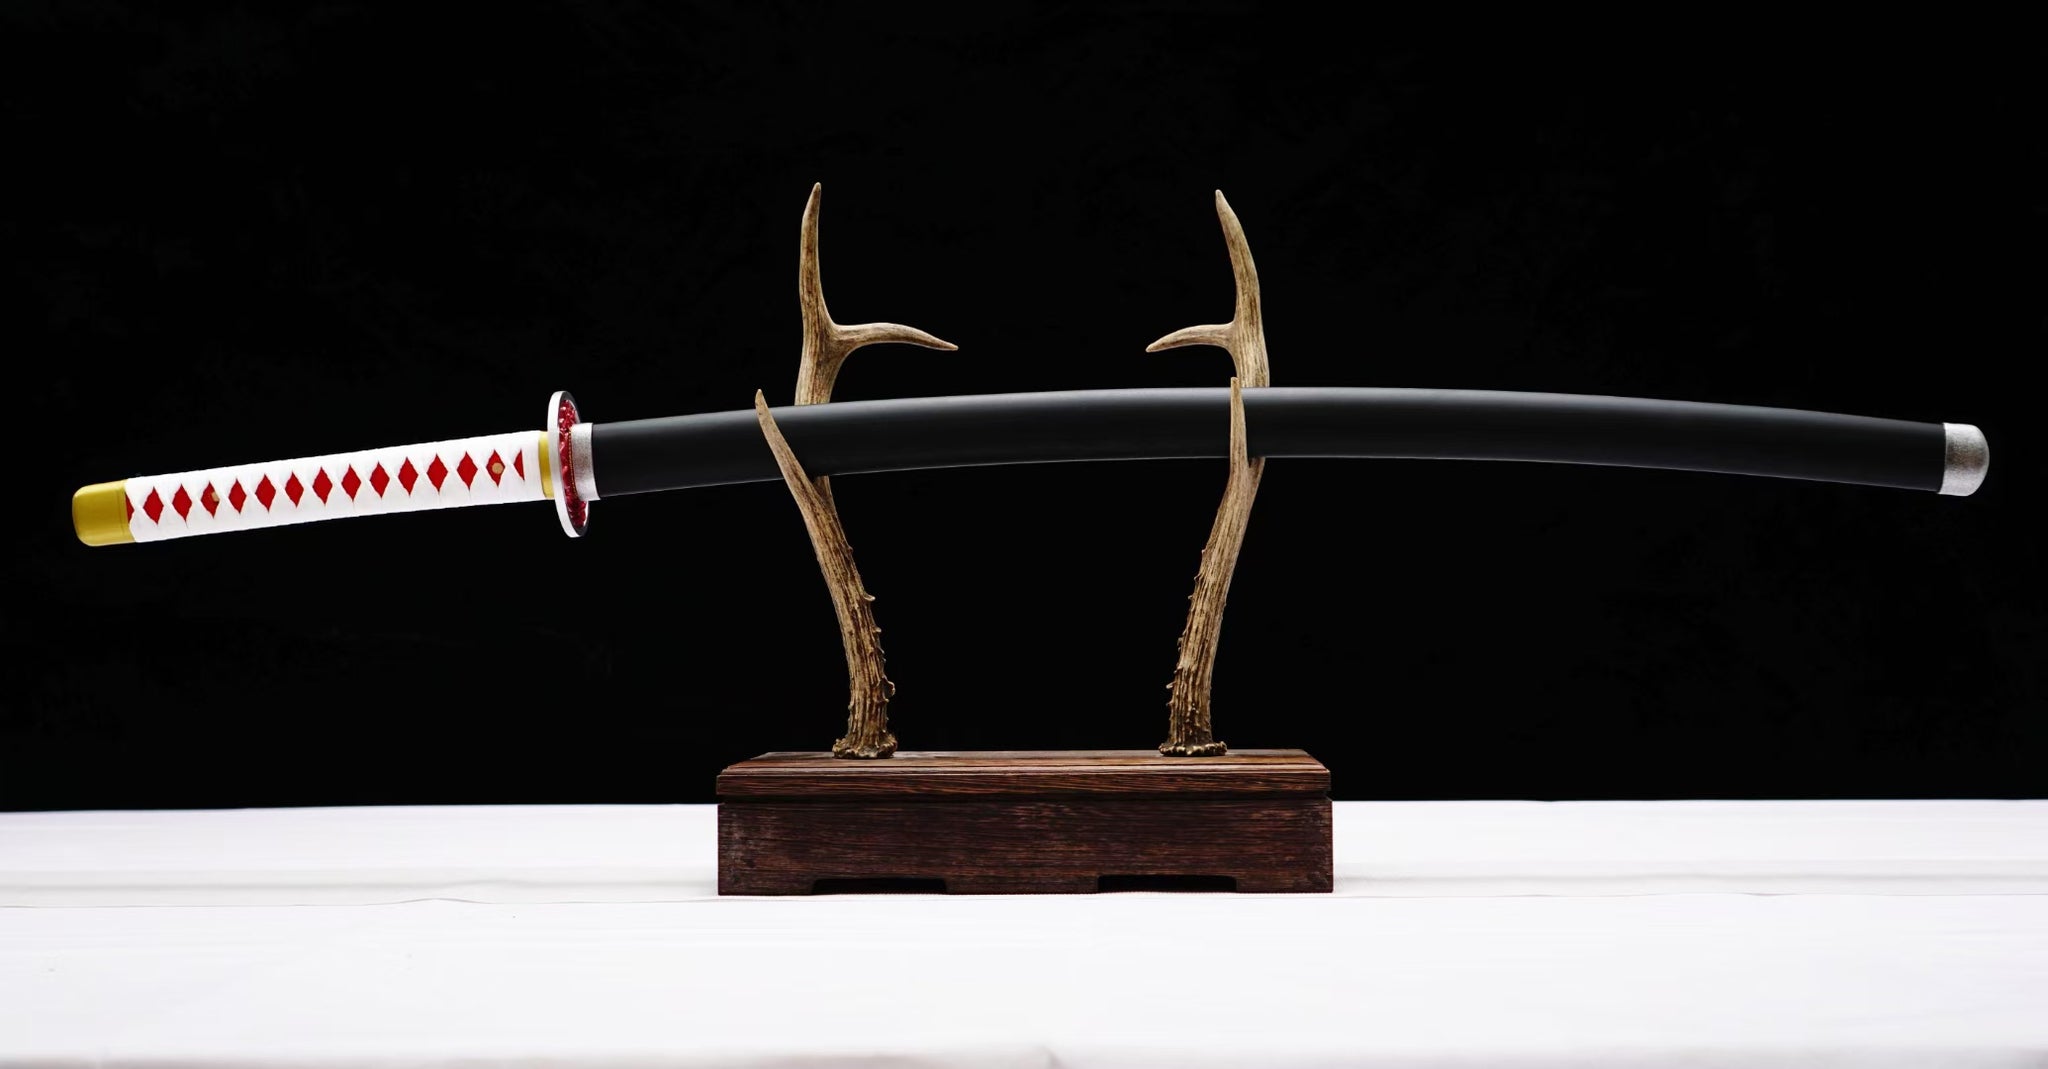 Tsuyuri Kanao swords demon slayer sword 1045 Steel katana Samurai Sword comic sword hansi sword